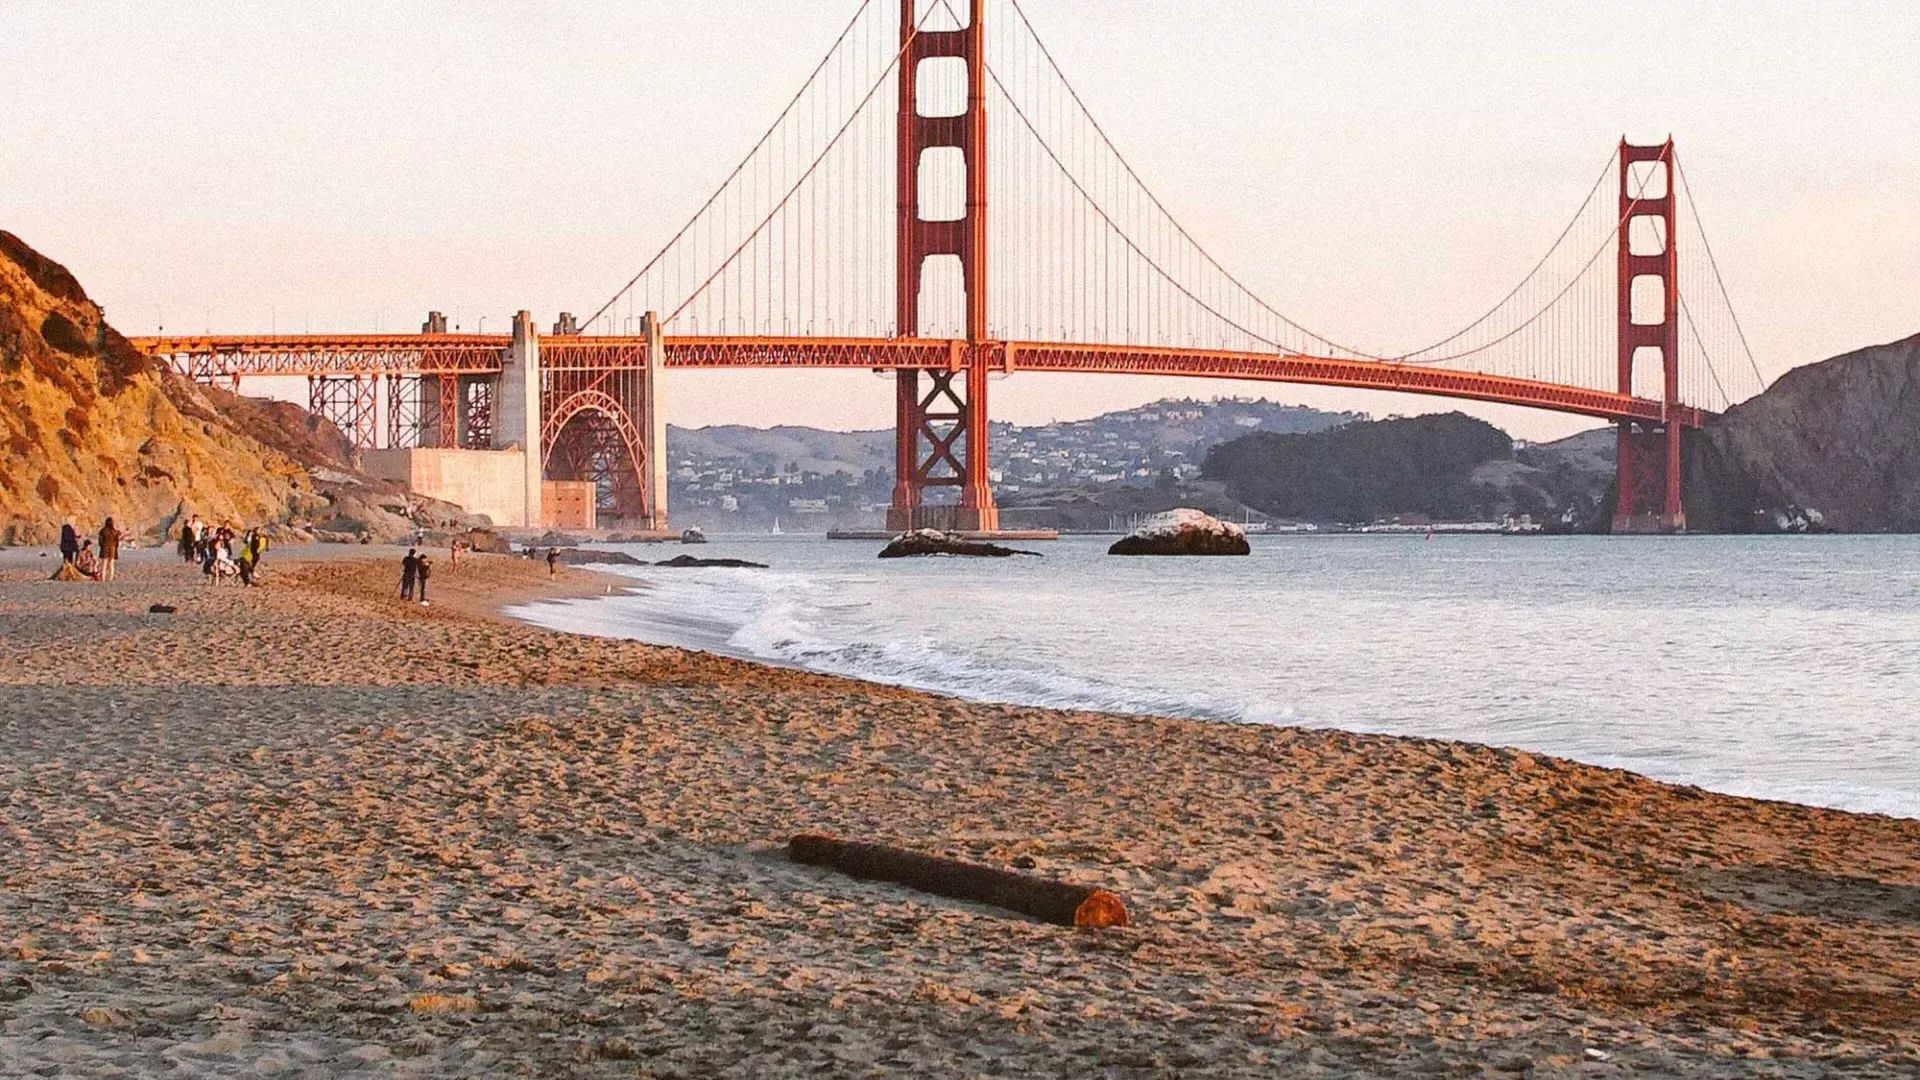 La playa Baker de San Francisco aparece en la foto con el puente Golden Gate al fondo.